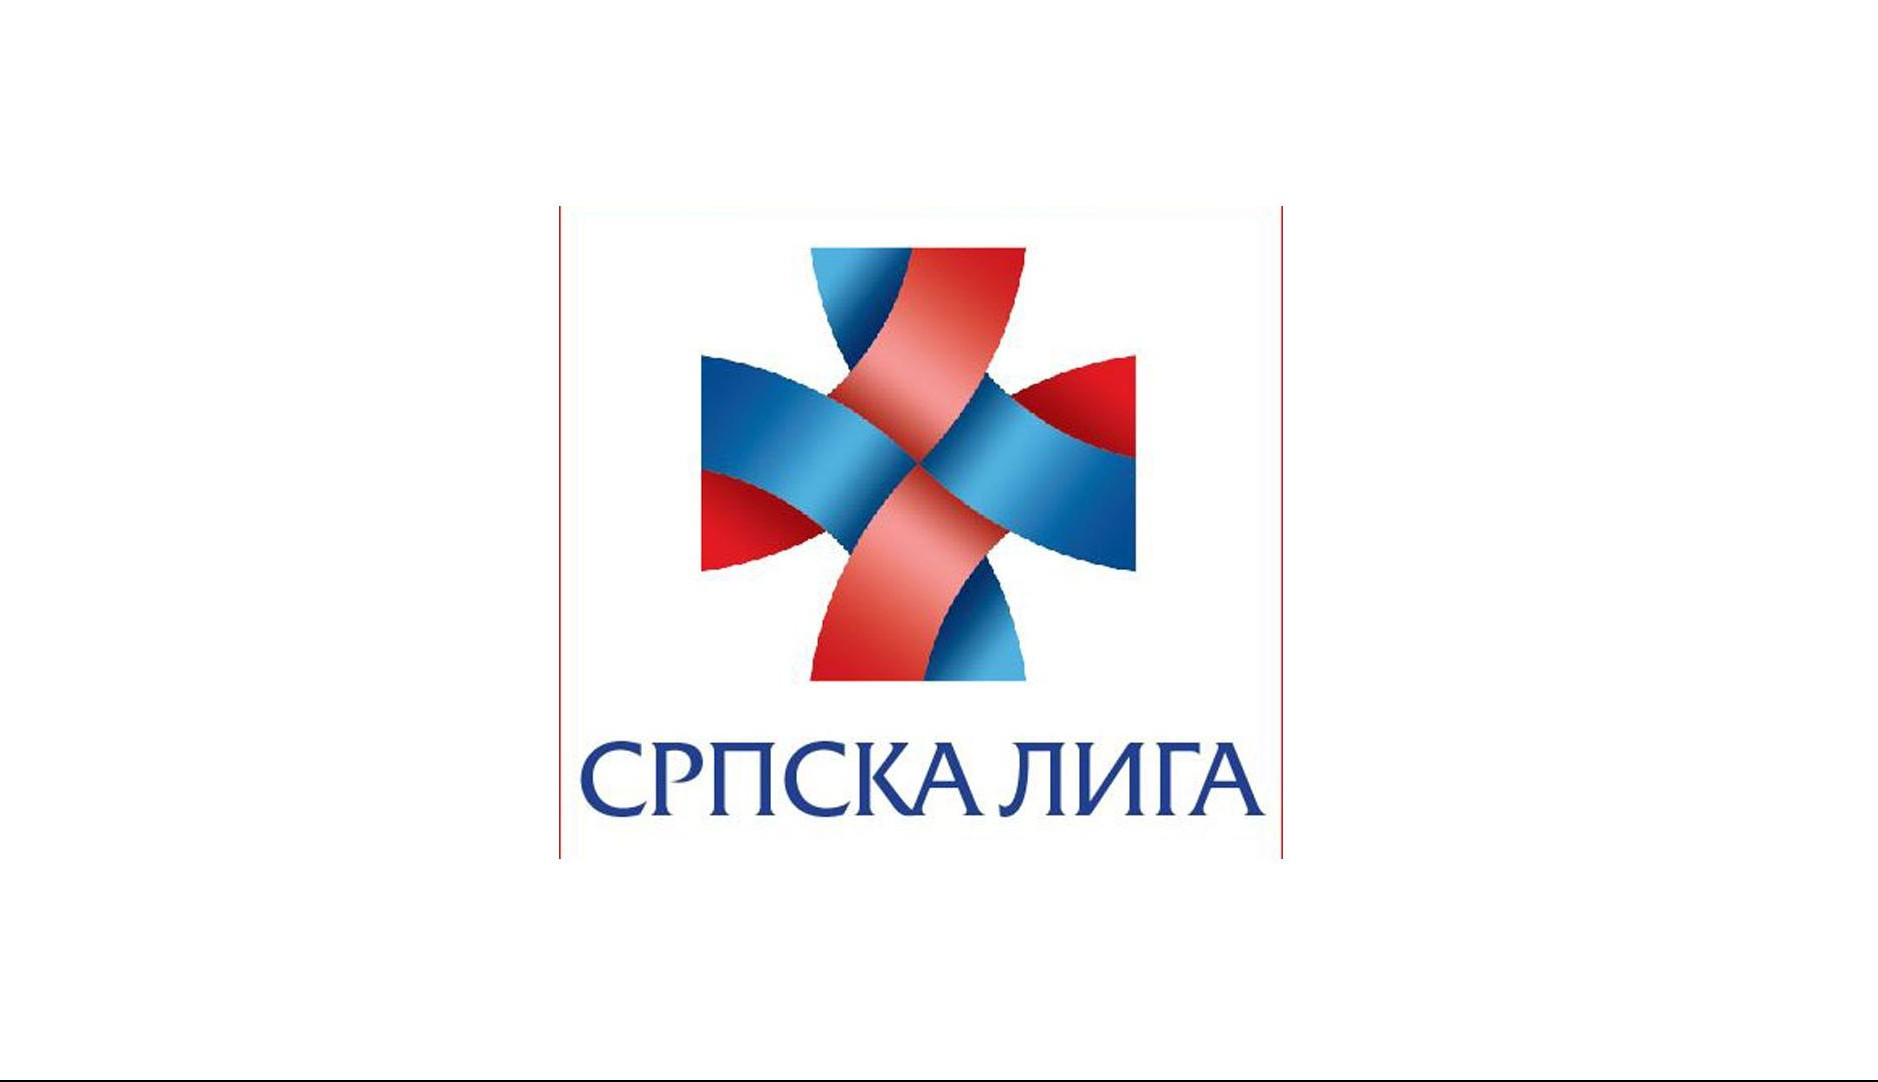 SRPSKA LIGA: Dolazak DFC u Beograd je dokaz da je Srbija bezbedna i to je pozitivan signal za srpsku privredu